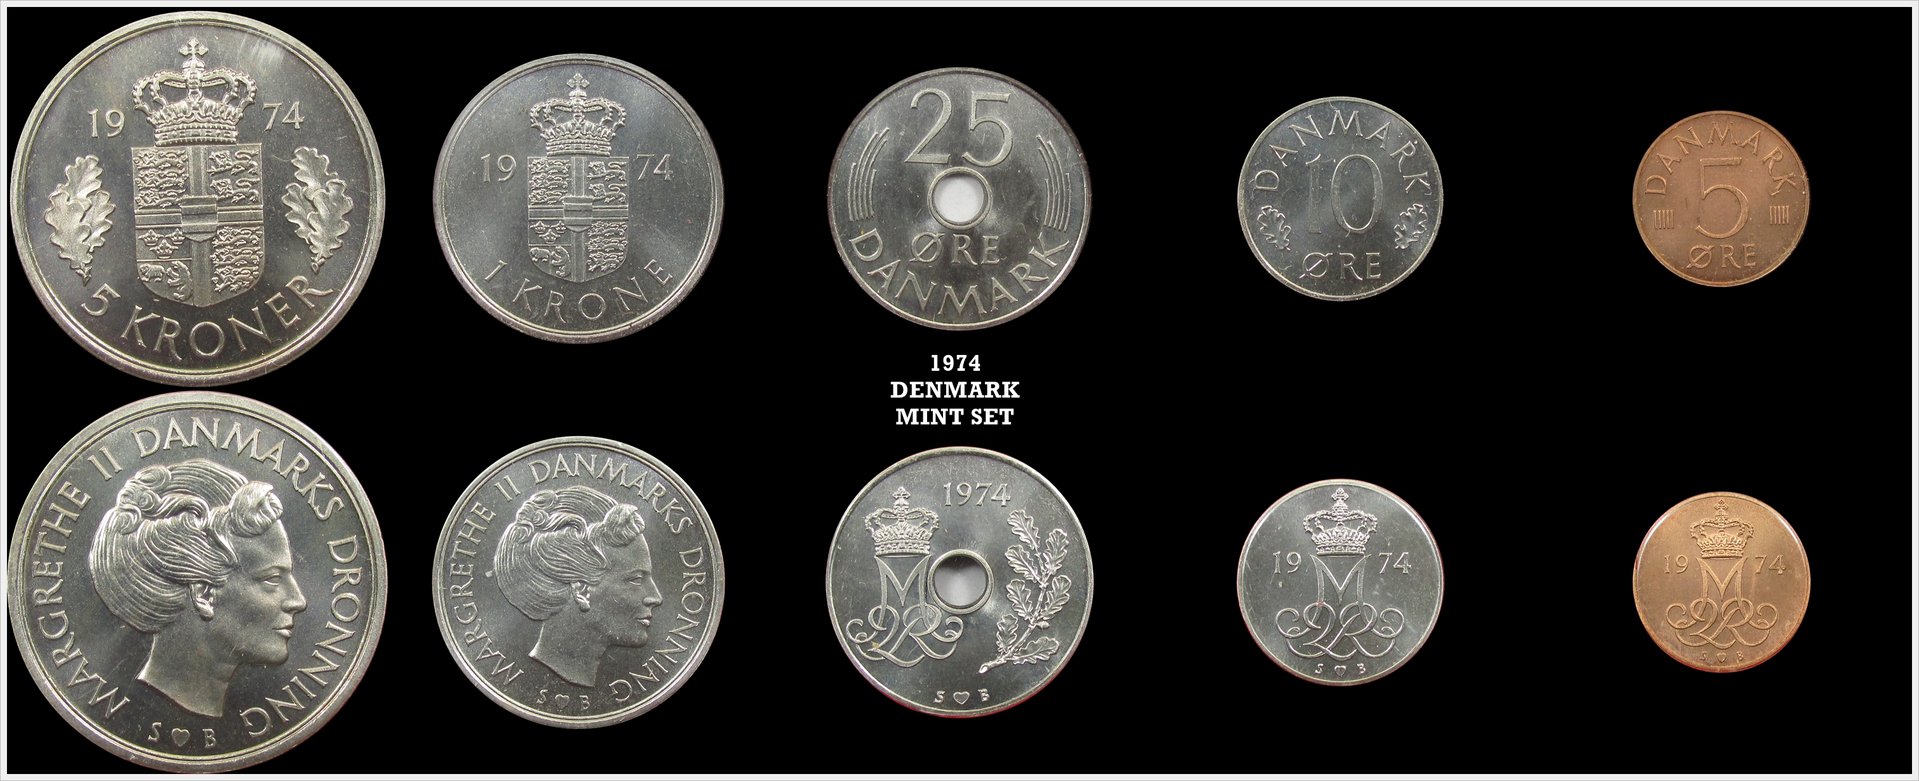 Denmark 1974 Mint Set.jpg